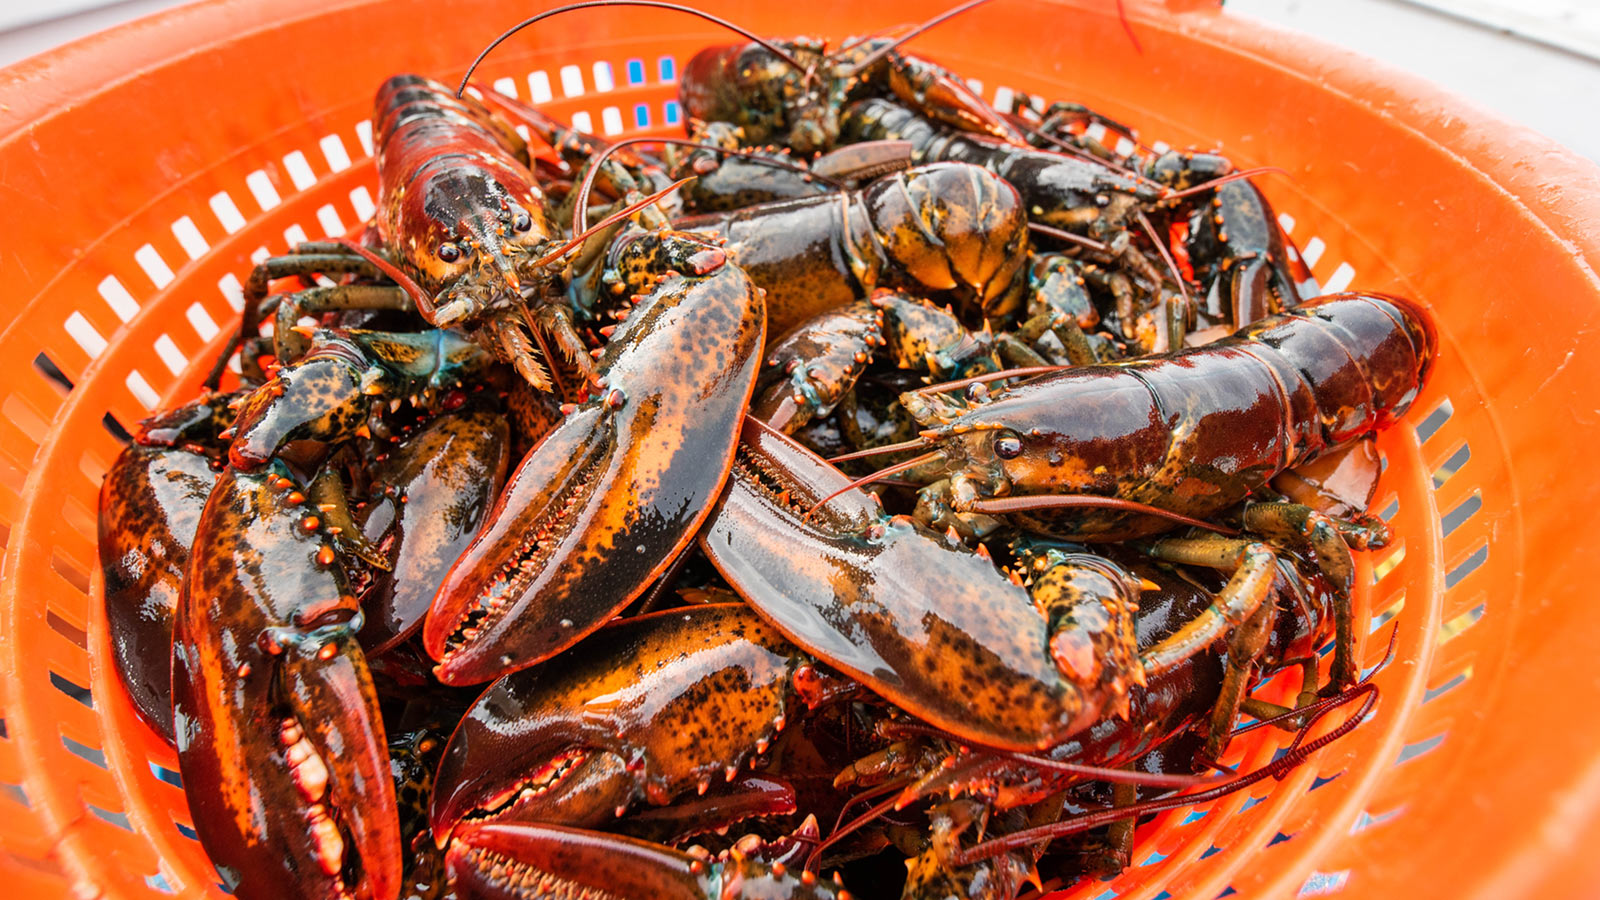 Lobsters in an orange bucket